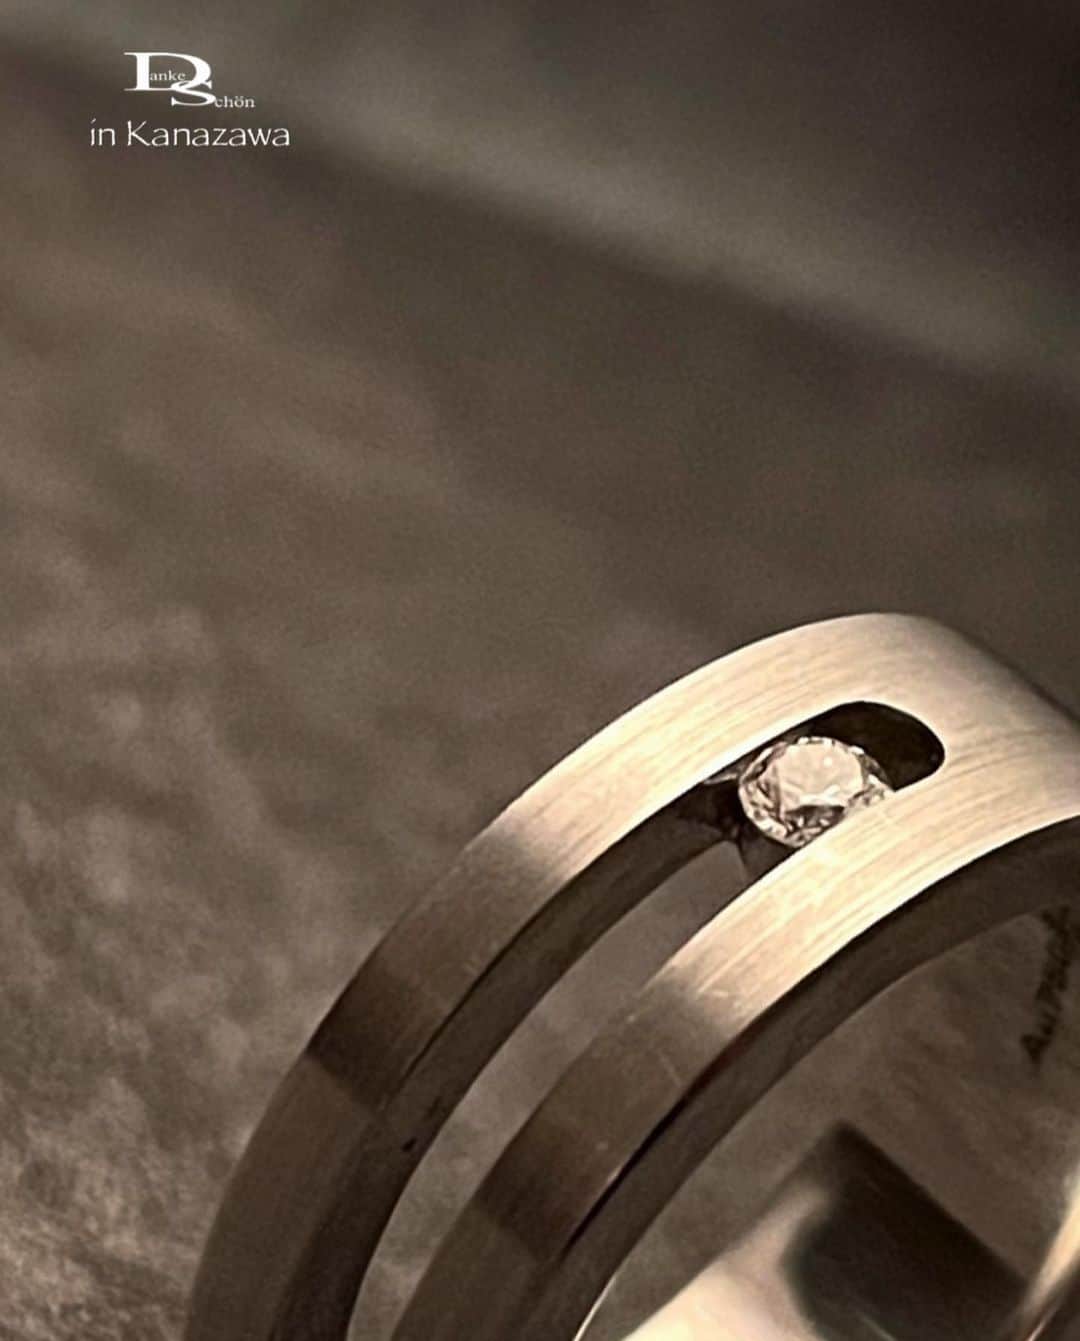 Danke schön ダンケ 金沢 結婚指輪 鍛造さんのインスタグラム写真 - (Danke schön ダンケ 金沢 結婚指輪 鍛造Instagram)「・ ・ ハイ🙌🏻 今日のバウアーさんは コレにします🙌🏻 ・ ・ こんな時代だからこそ 逆転の発想しませんか？ ・ ・ 本気で結婚指輪を ｢生涯共に…の指輪」と思うなら ・ ・ 当たり障りのないような 形の指輪を持った所で ・ ・ 心の満足度持続出来ます？ ・ ・ ならば一層の事 今日の写真のモデルくらいに 突き抜け指輪 ・ ・ ポンと左の薬指に はめちゃった方がよっぽど ・ ・ 買ったじゃなくて ｢射止めた🙌🏻」 ・ ・ よし🙌🏻コレが似合う 40代・50代・60代…を目指すぞっ💪 ・ ・ って気持ちスイッチ入ると 思いませんか？ ・ ・ 只！変わったデザインだから こんな事を書いているのではないので 御安心ください。 ・ ・ この指輪にはちゃんと｢生涯共に…の指輪」の 裏付けが既に整っていますので🤭 ・ ・ ❶耐久性は ｢工業系鍛造削り出し」による 裏付け以上にお墨付き🤭 ・ ・ ❷つけ心地は 幅が少々太めでも平打ちの半分は抜け感が あるので見た目以上につけやすくて 圧迫感がないのです。 ・ ・ ❸飽きのこないデザイン こう見えて至ってシンプル！ 平打ち面もあればDia留めの所もあれば… Diaを敢えて見せずに 抜け感地金だけでもデザインになる優れモノ🙌🏻 ・ ・ しかも おまけ付き🤭 ・ ・ 数年後の更に変化が欲しくなったら 買い替えるのでは無く 加えていきやすい足し算 （重ね使い）がめちゃくちゃしやすい形状 ・ ・ 人とはみんな違うモノが 欲しいと思いつつ…でもどぅです？ ・ ・ 例えばテーブル囲んで話している 距離になった時に ・ ・ 本当に違う指輪してるなって 感じた経験した事あります？ ・ ・ 私🙌🏻断然突き抜ける派 応援したいです！ サポートしたいです！ ・ ・ だからこのモデル ず——っと御用意しているのです。 ・ ・ 是非！自分にとって 心に響く生涯共に…の指輪を 真剣に探し求め身につけませんか？ ・ ・ 📷2 Dia爪無しをパシャリ‼︎ ほらっ🤭シンプルでしょ！これでDiaが 留まっているんですよ🙌🏻 ・ ・ ・ ・ ・ 【鍛造削り出し】 🇩🇪クリスチャンバウアー 専門店 ・ ・ ワンランク上をいくノウハウの クリスチャンバウアーの選び方なら 『Danke schön 』 ・ ・ ・ —— 𝐃𝐚𝐧𝐤𝐞——— ▪︎ Instagramプロフィール 🔜 @danke2005  —————————————————————𝐒𝐜𝐡⍥𝐧——— ・ ・ #クリスチャンバウアー金沢 #鍛造指輪 #鍛造リング #結婚指輪 #結婚指輪オーダー #切削加工 #結婚指輪探し #結婚指輪選び #指輪探し #指輪選び #マリッジリング #結婚指輪金沢 #金沢結婚指輪 #セカンドリング #結婚指輪買い替え #地金屋鍛造 #ブライダルリング #結婚記念日 #ベビーリング #ドイツリング #自分へのご褒美 #クリスチャンバウアーダンケ #クリスチャンバウアーdanke #クリスチャンバウアー  ------------------------------------------✈︎ ---------  鍛造削り出し 🇩🇪クリスチャンバウアー 専門店 『𝐃𝐚𝐧𝐤𝐞 𝐬𝐜𝐡⍥𝐧』 ・ • 営業時間 am11:00〜pm9:00 • 定休日 : 木曜日 • 駐車場 : 店舗前OK • ご予約 : 優先 ・ ・ ——𝐃𝐚𝐧𝐤𝐞——————————————— ▪︎トップページ 🔜 @danke2005 ———————————————————-𝐒𝐜𝐡⍥𝐧—————」9月1日 19時17分 - danke2005